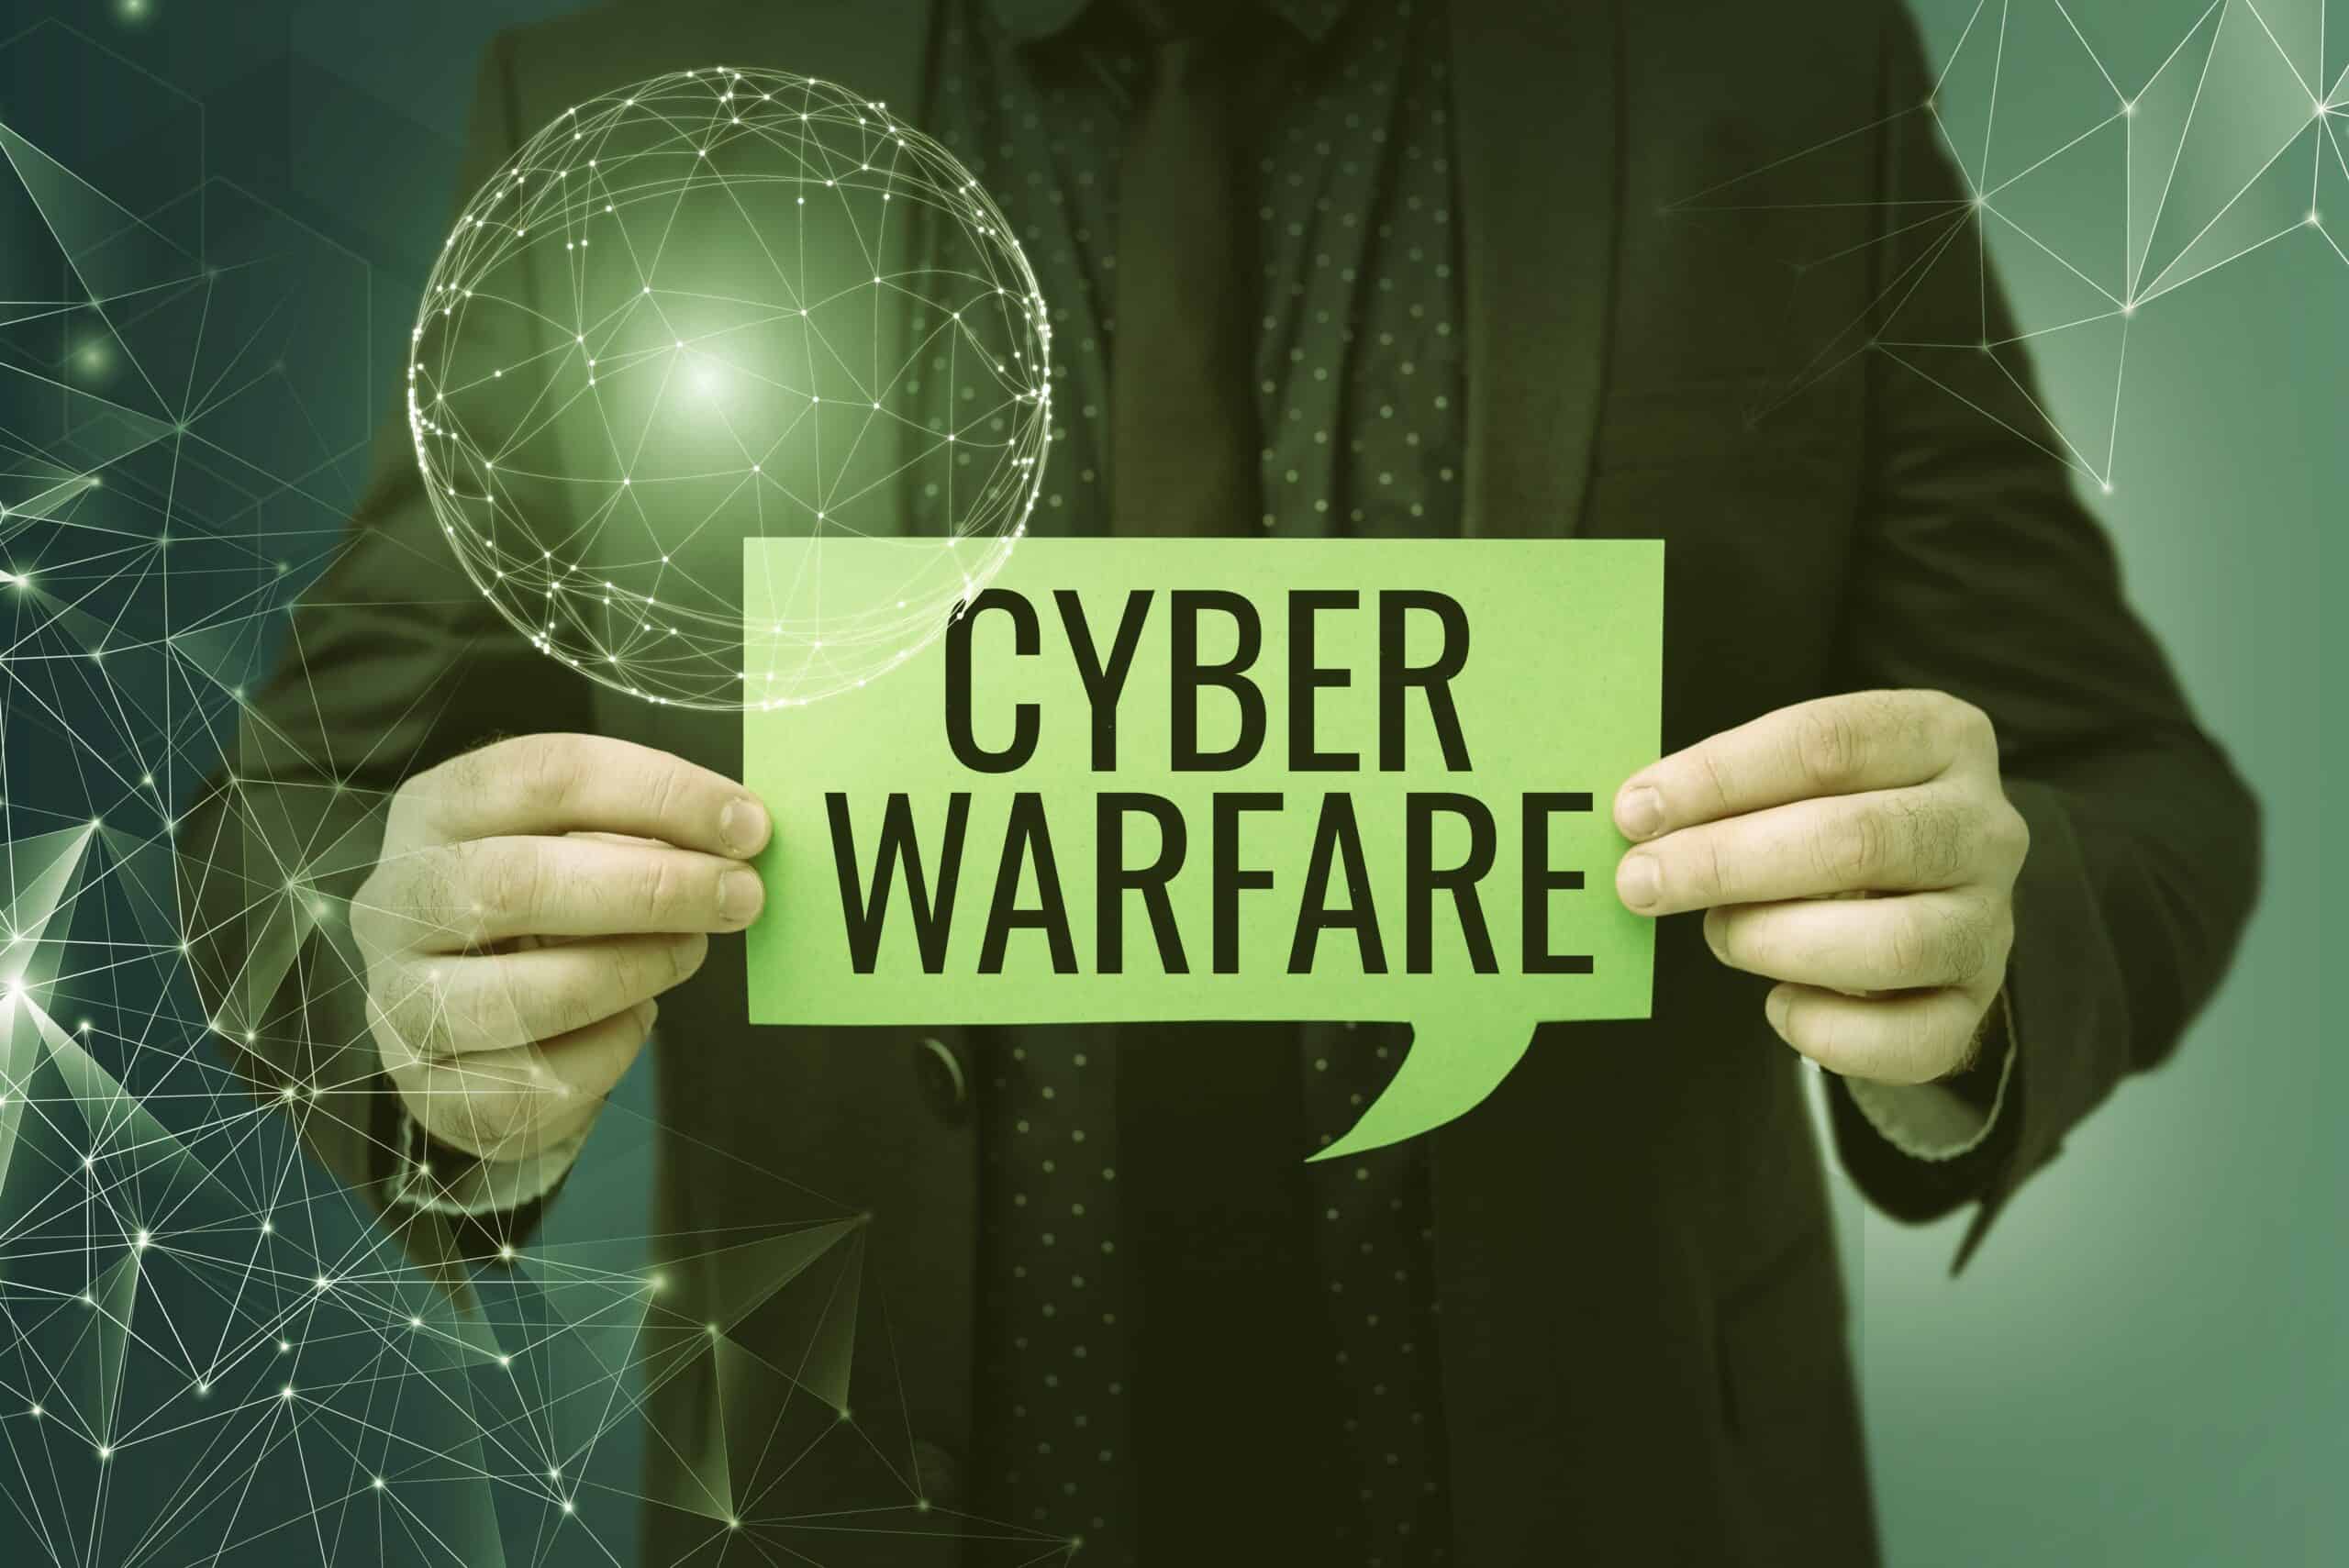 What is Cyber warfare